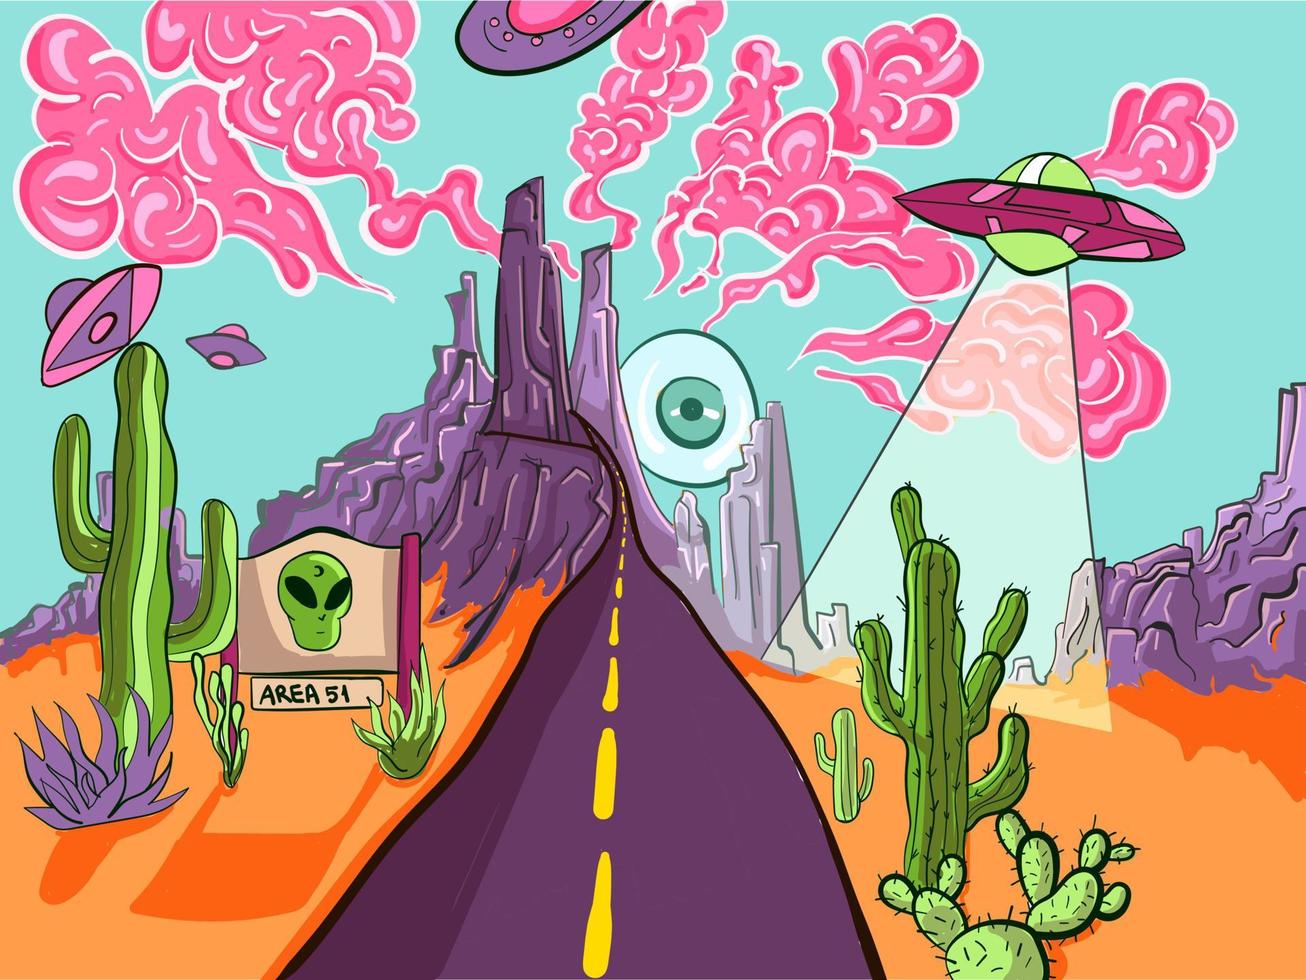 arte de viagem e psicodélica da paisagem do deserto da área 51. ilustração surreal de uma invasão alienígena e ufo com cactos, montanhas e nuvens esfumaçadas cor de rosa. vetor